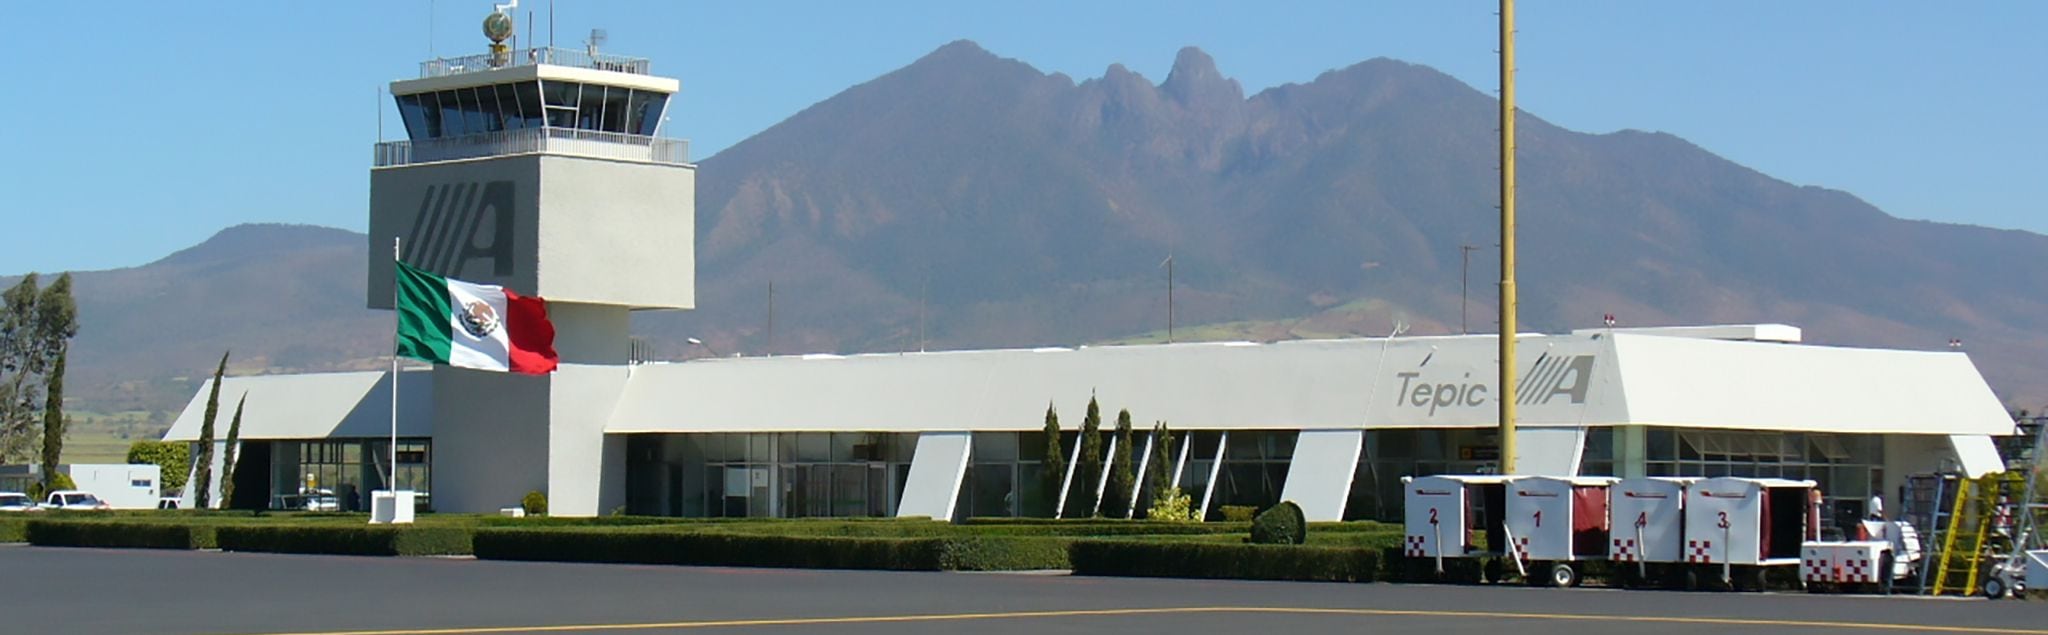 El grupo que administra este aeropuerto también se encarga del de Puerto Escondido, en Oaxaca. Créditos: Aeropuertos ASA